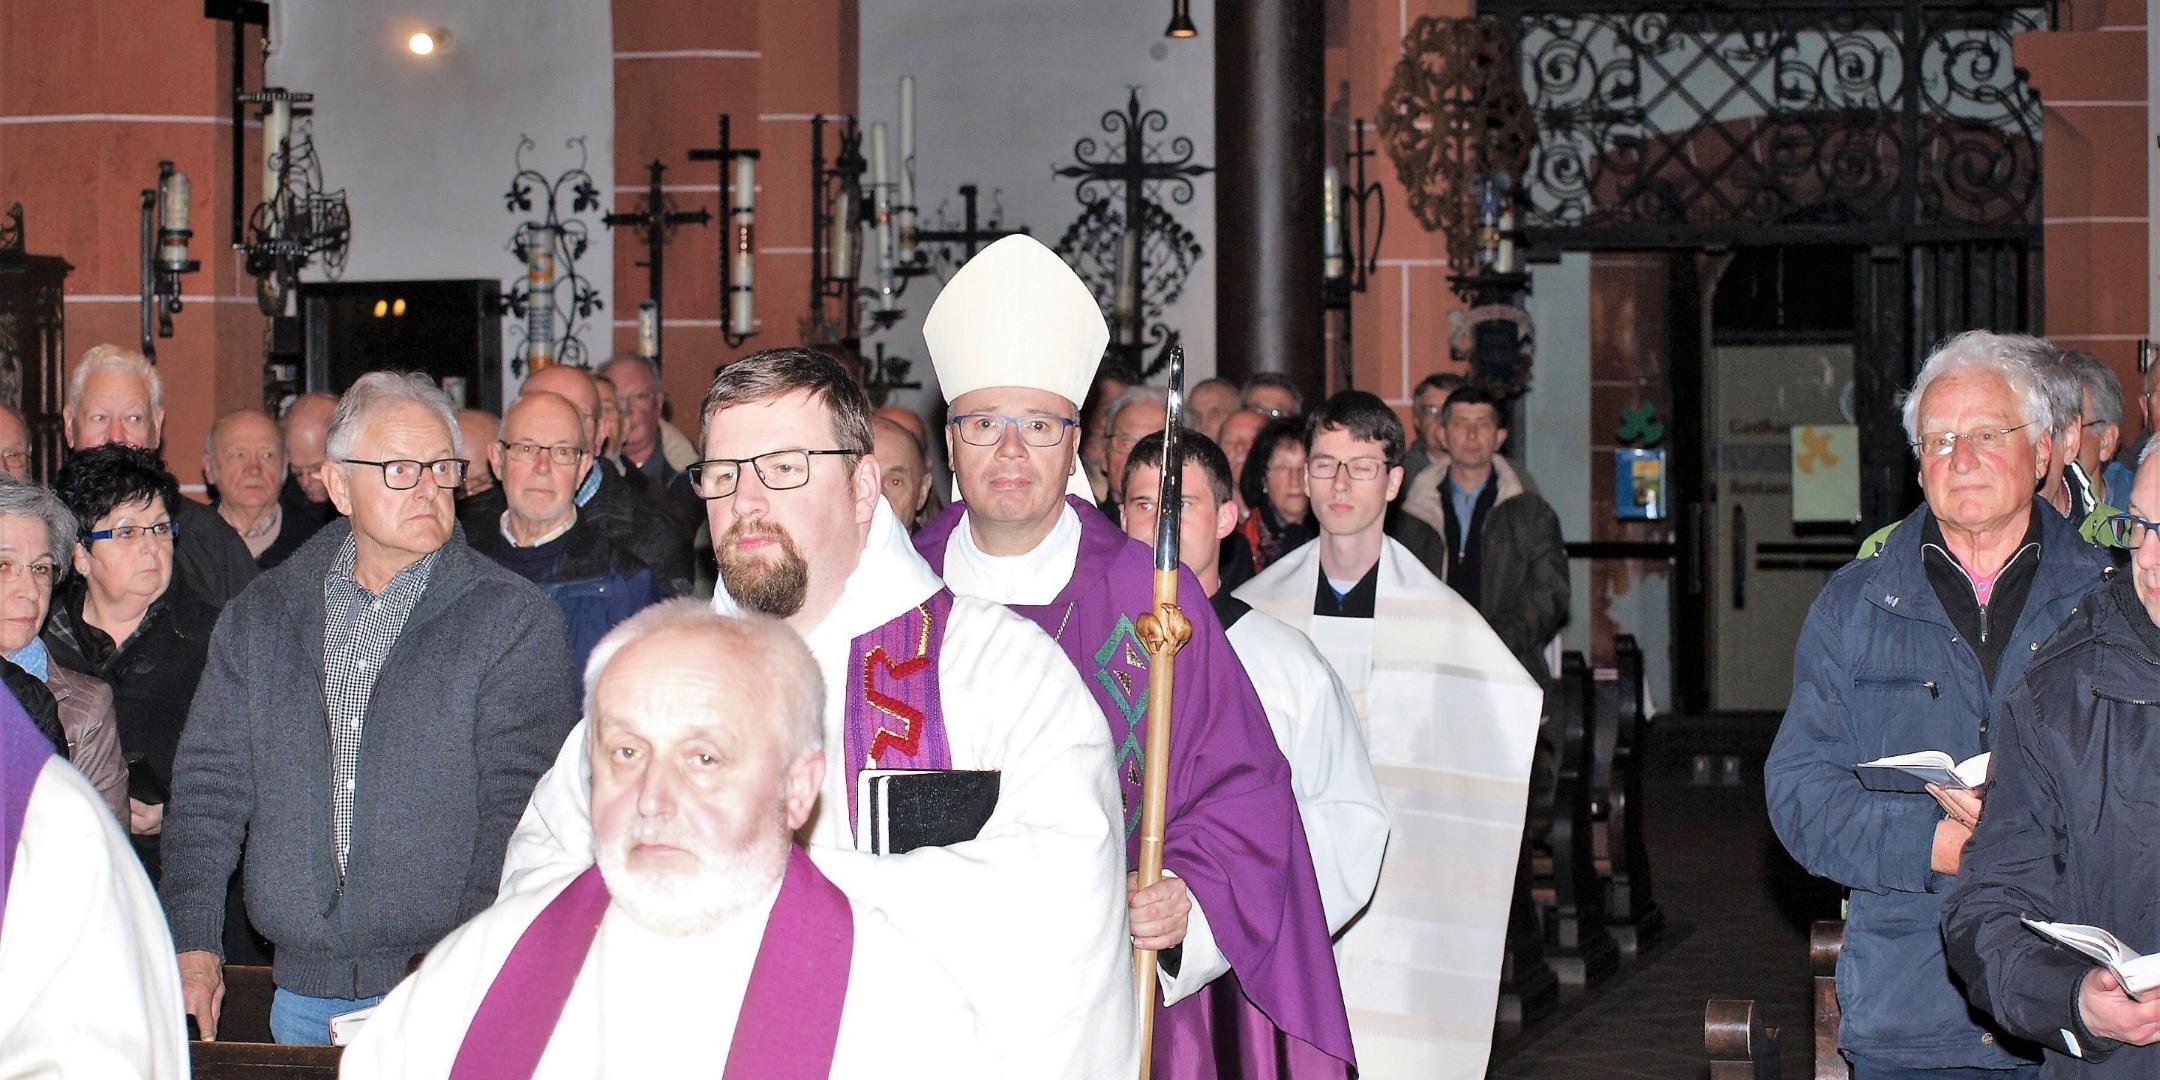 Gottesdienst mit Bischof: Die Heilige Messe in der Klausener Wallfahrtskirche ist traditionell Höhepunkt und Abschluss der Männerwallfahrt.